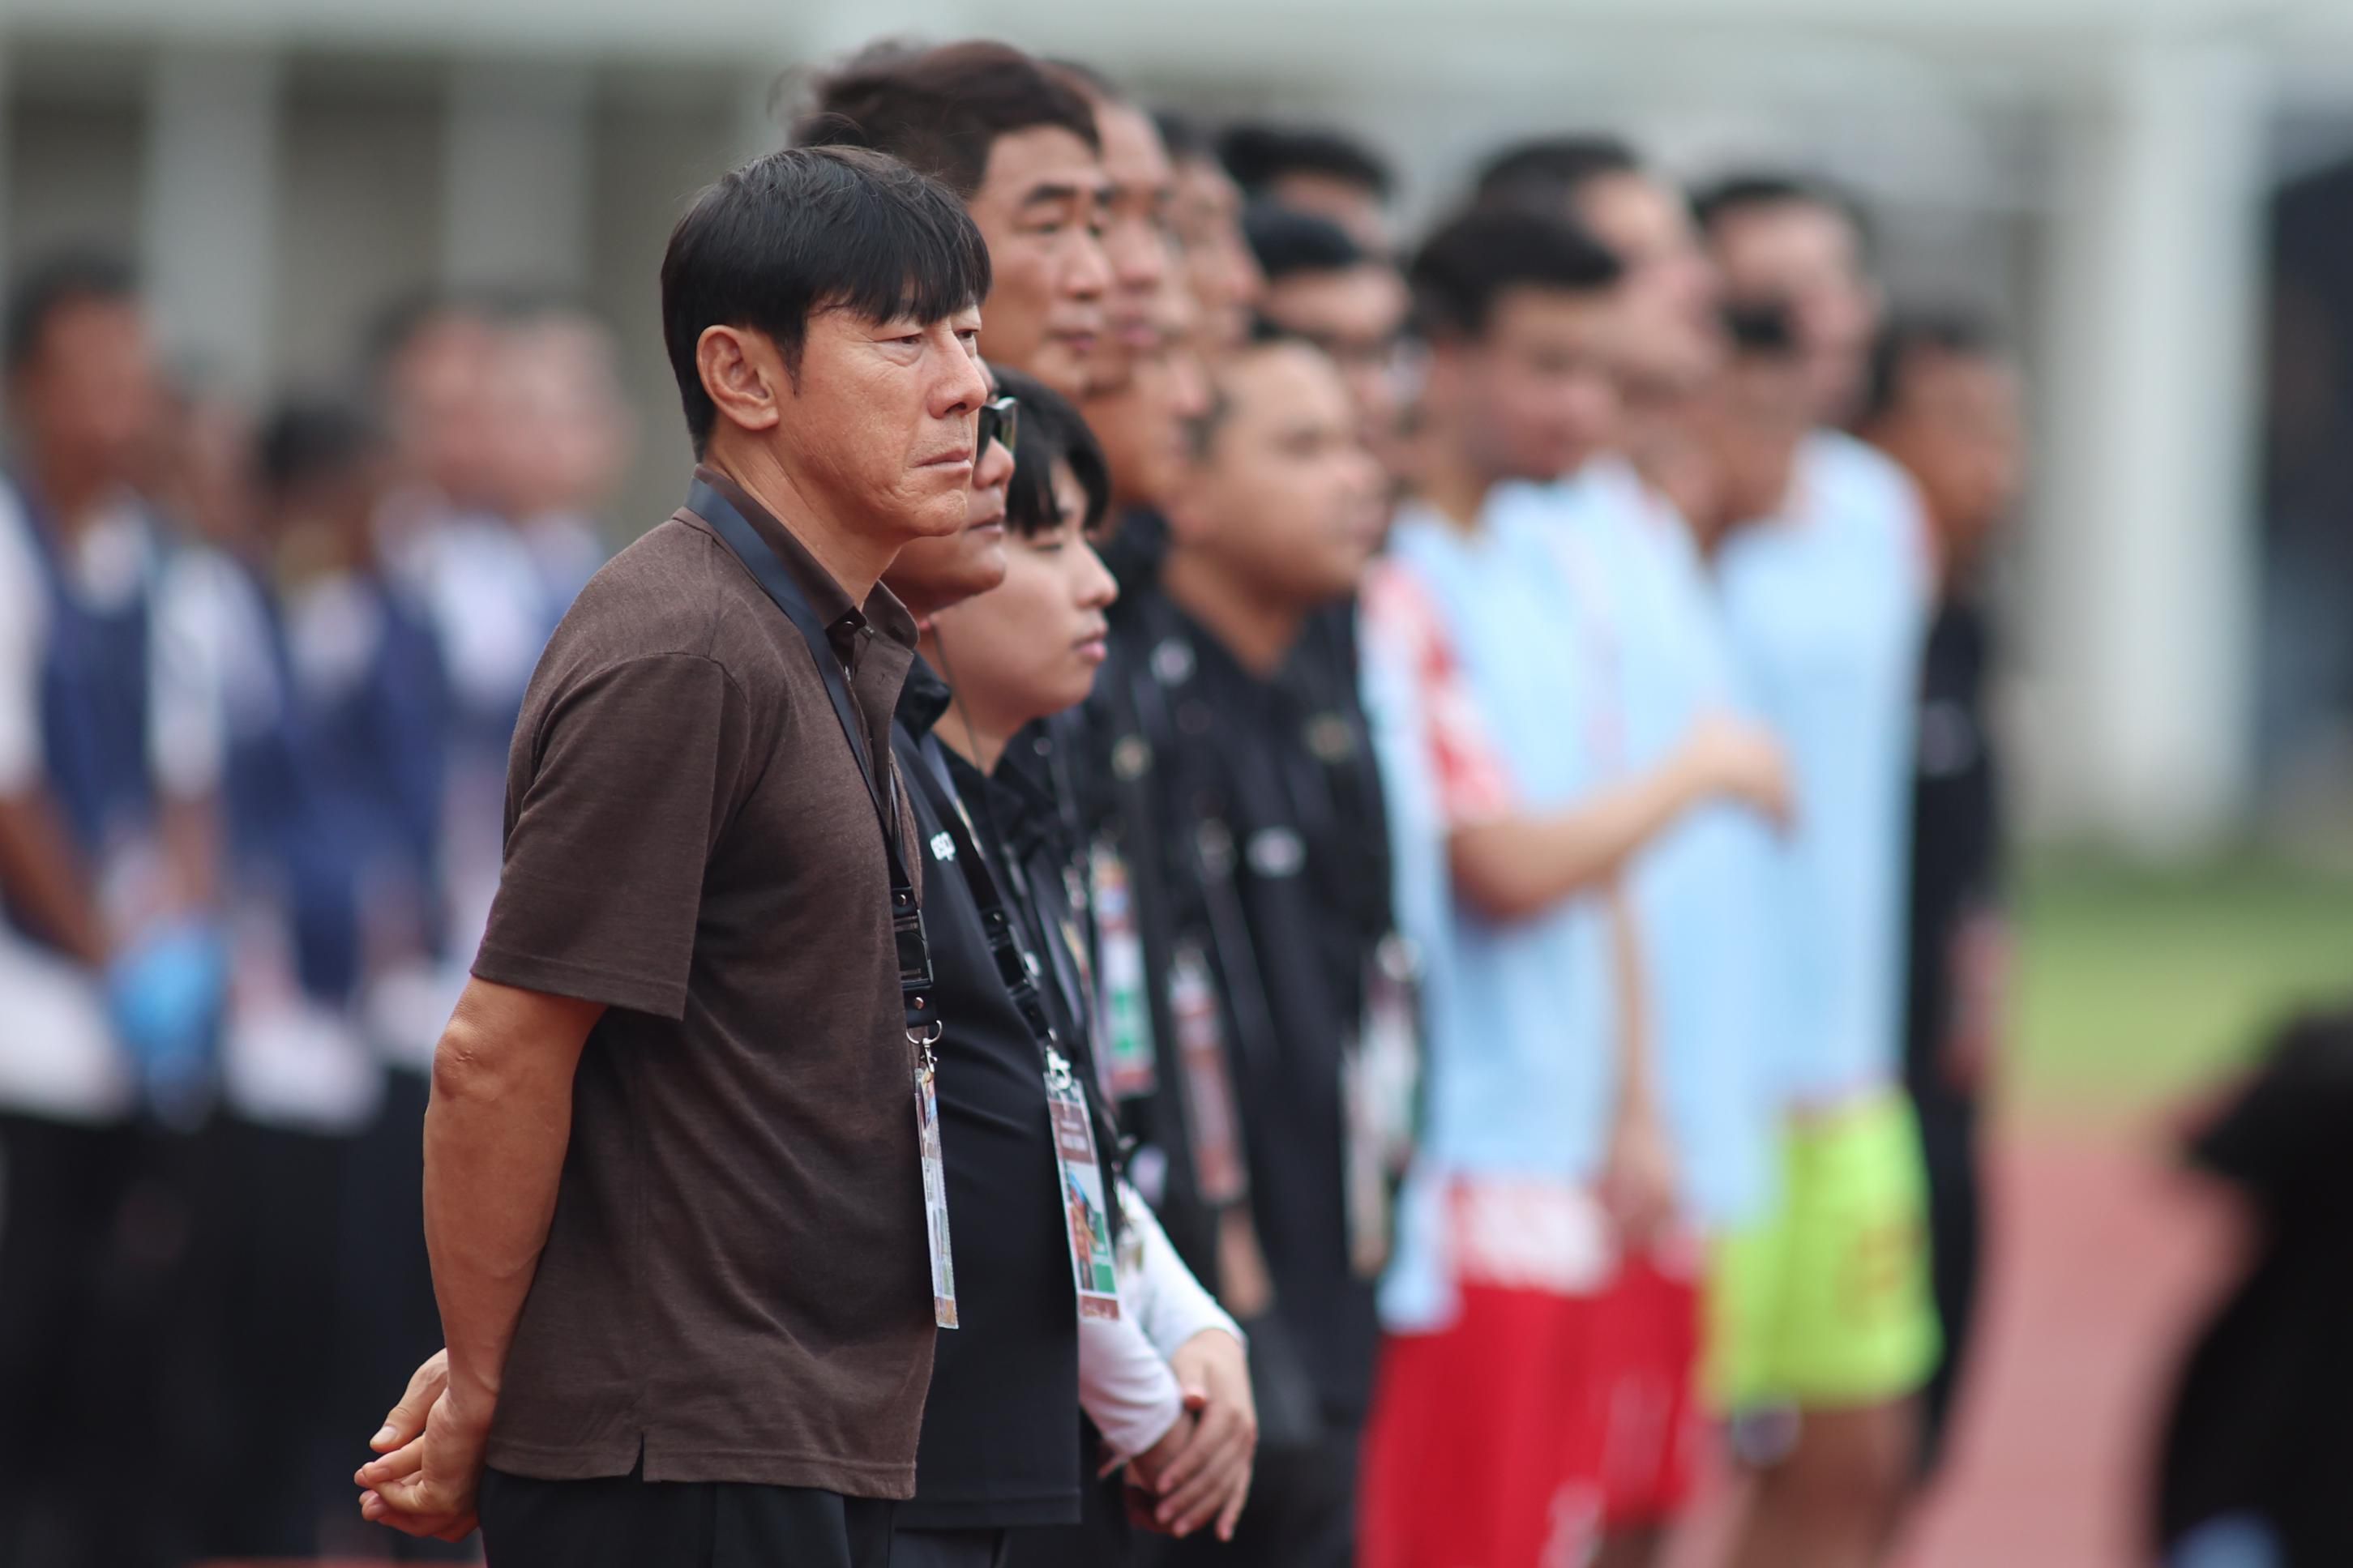 Pelatih Shin Tae-yong mengatakan bahwa pertandingan ini memang bertujuan untuk mengembalikan kondisi fisik dan melihat performa pemain setelah libur kompetisi.